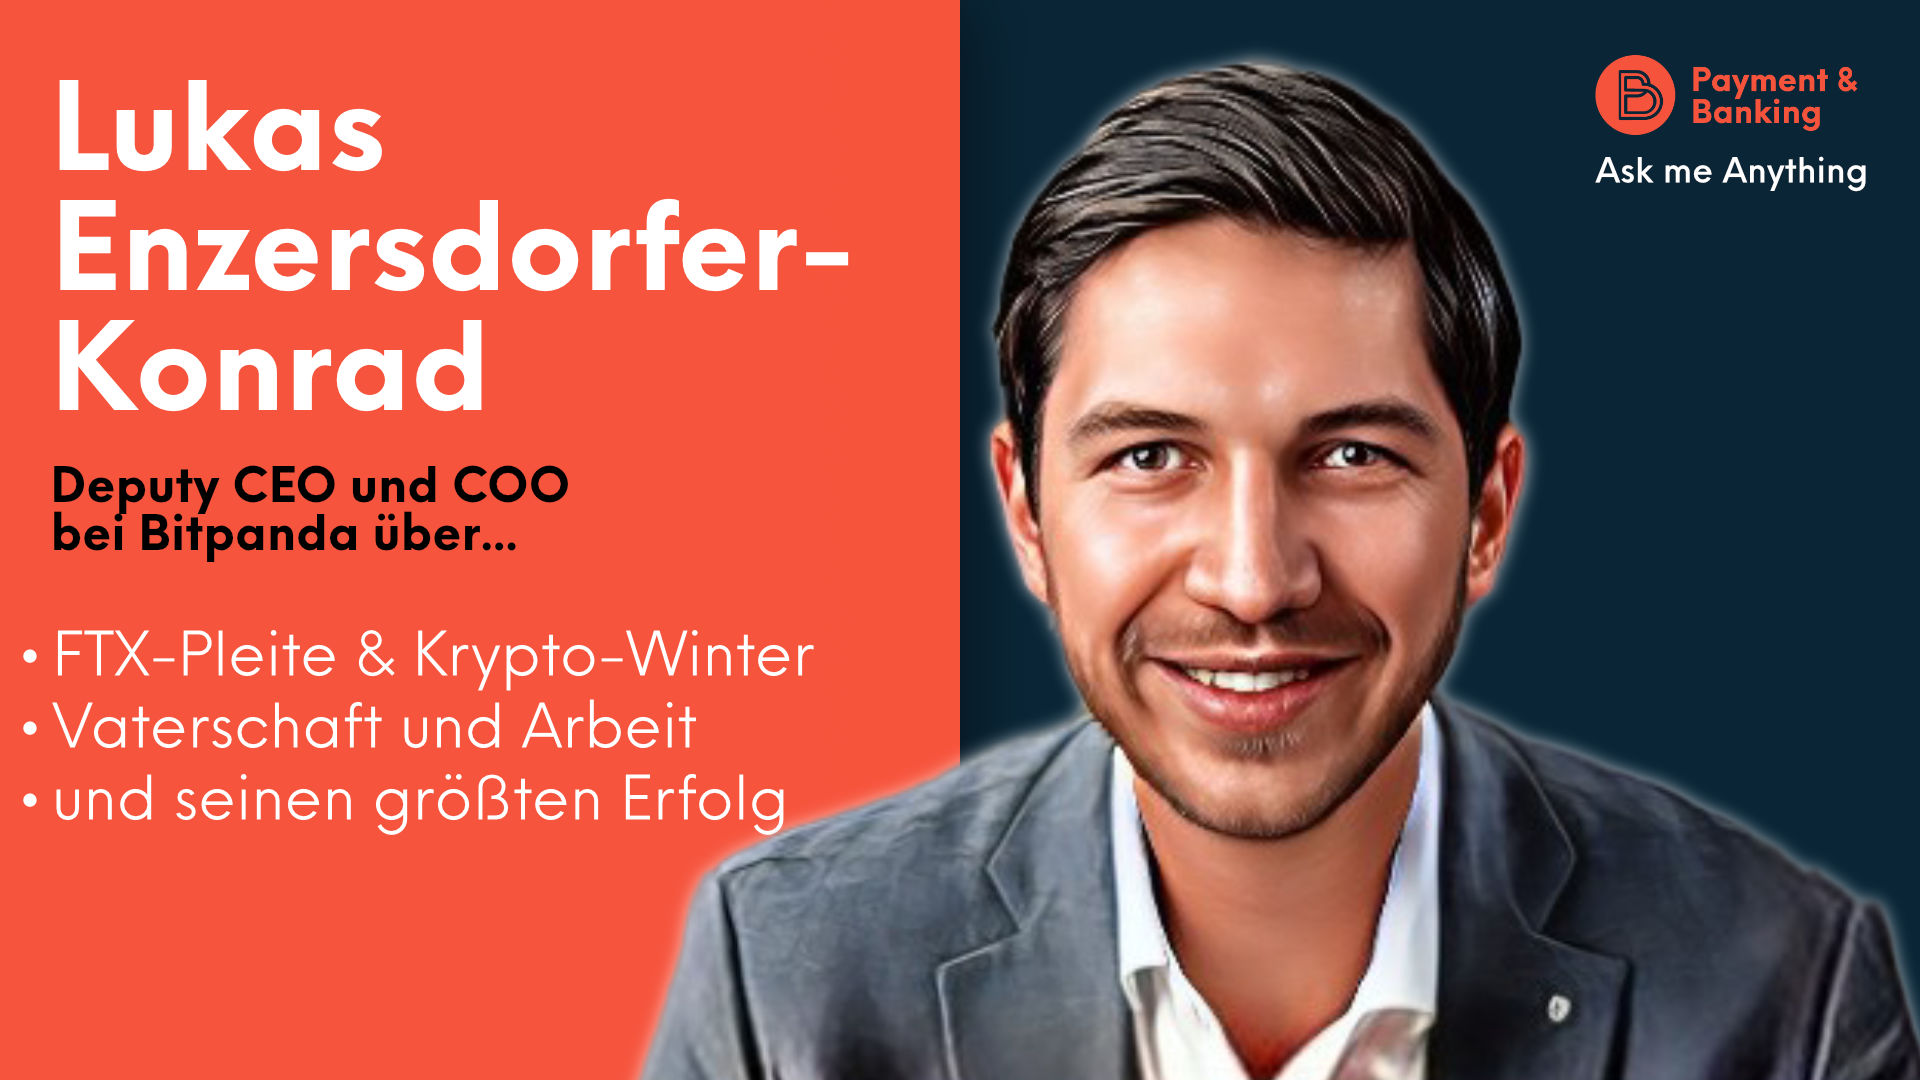 Lukas Enzersdorfer-Konrad ist Deputy CEO und COO bei Bitpanda